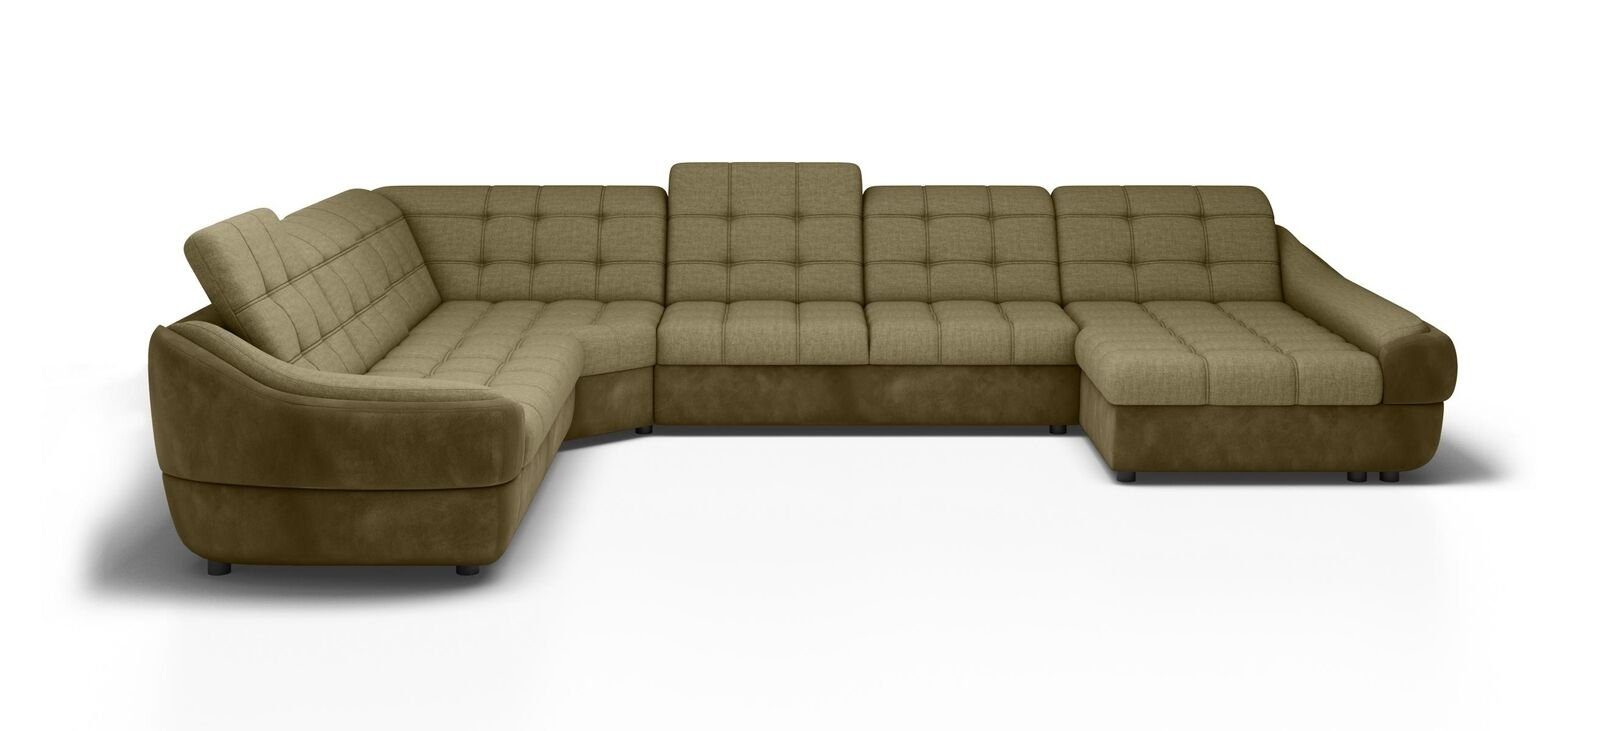 Ecksofa Neu Polster Wohnlandschaft Sofa Textil Design Garnitur JVmoebel Couch Ecksofa,